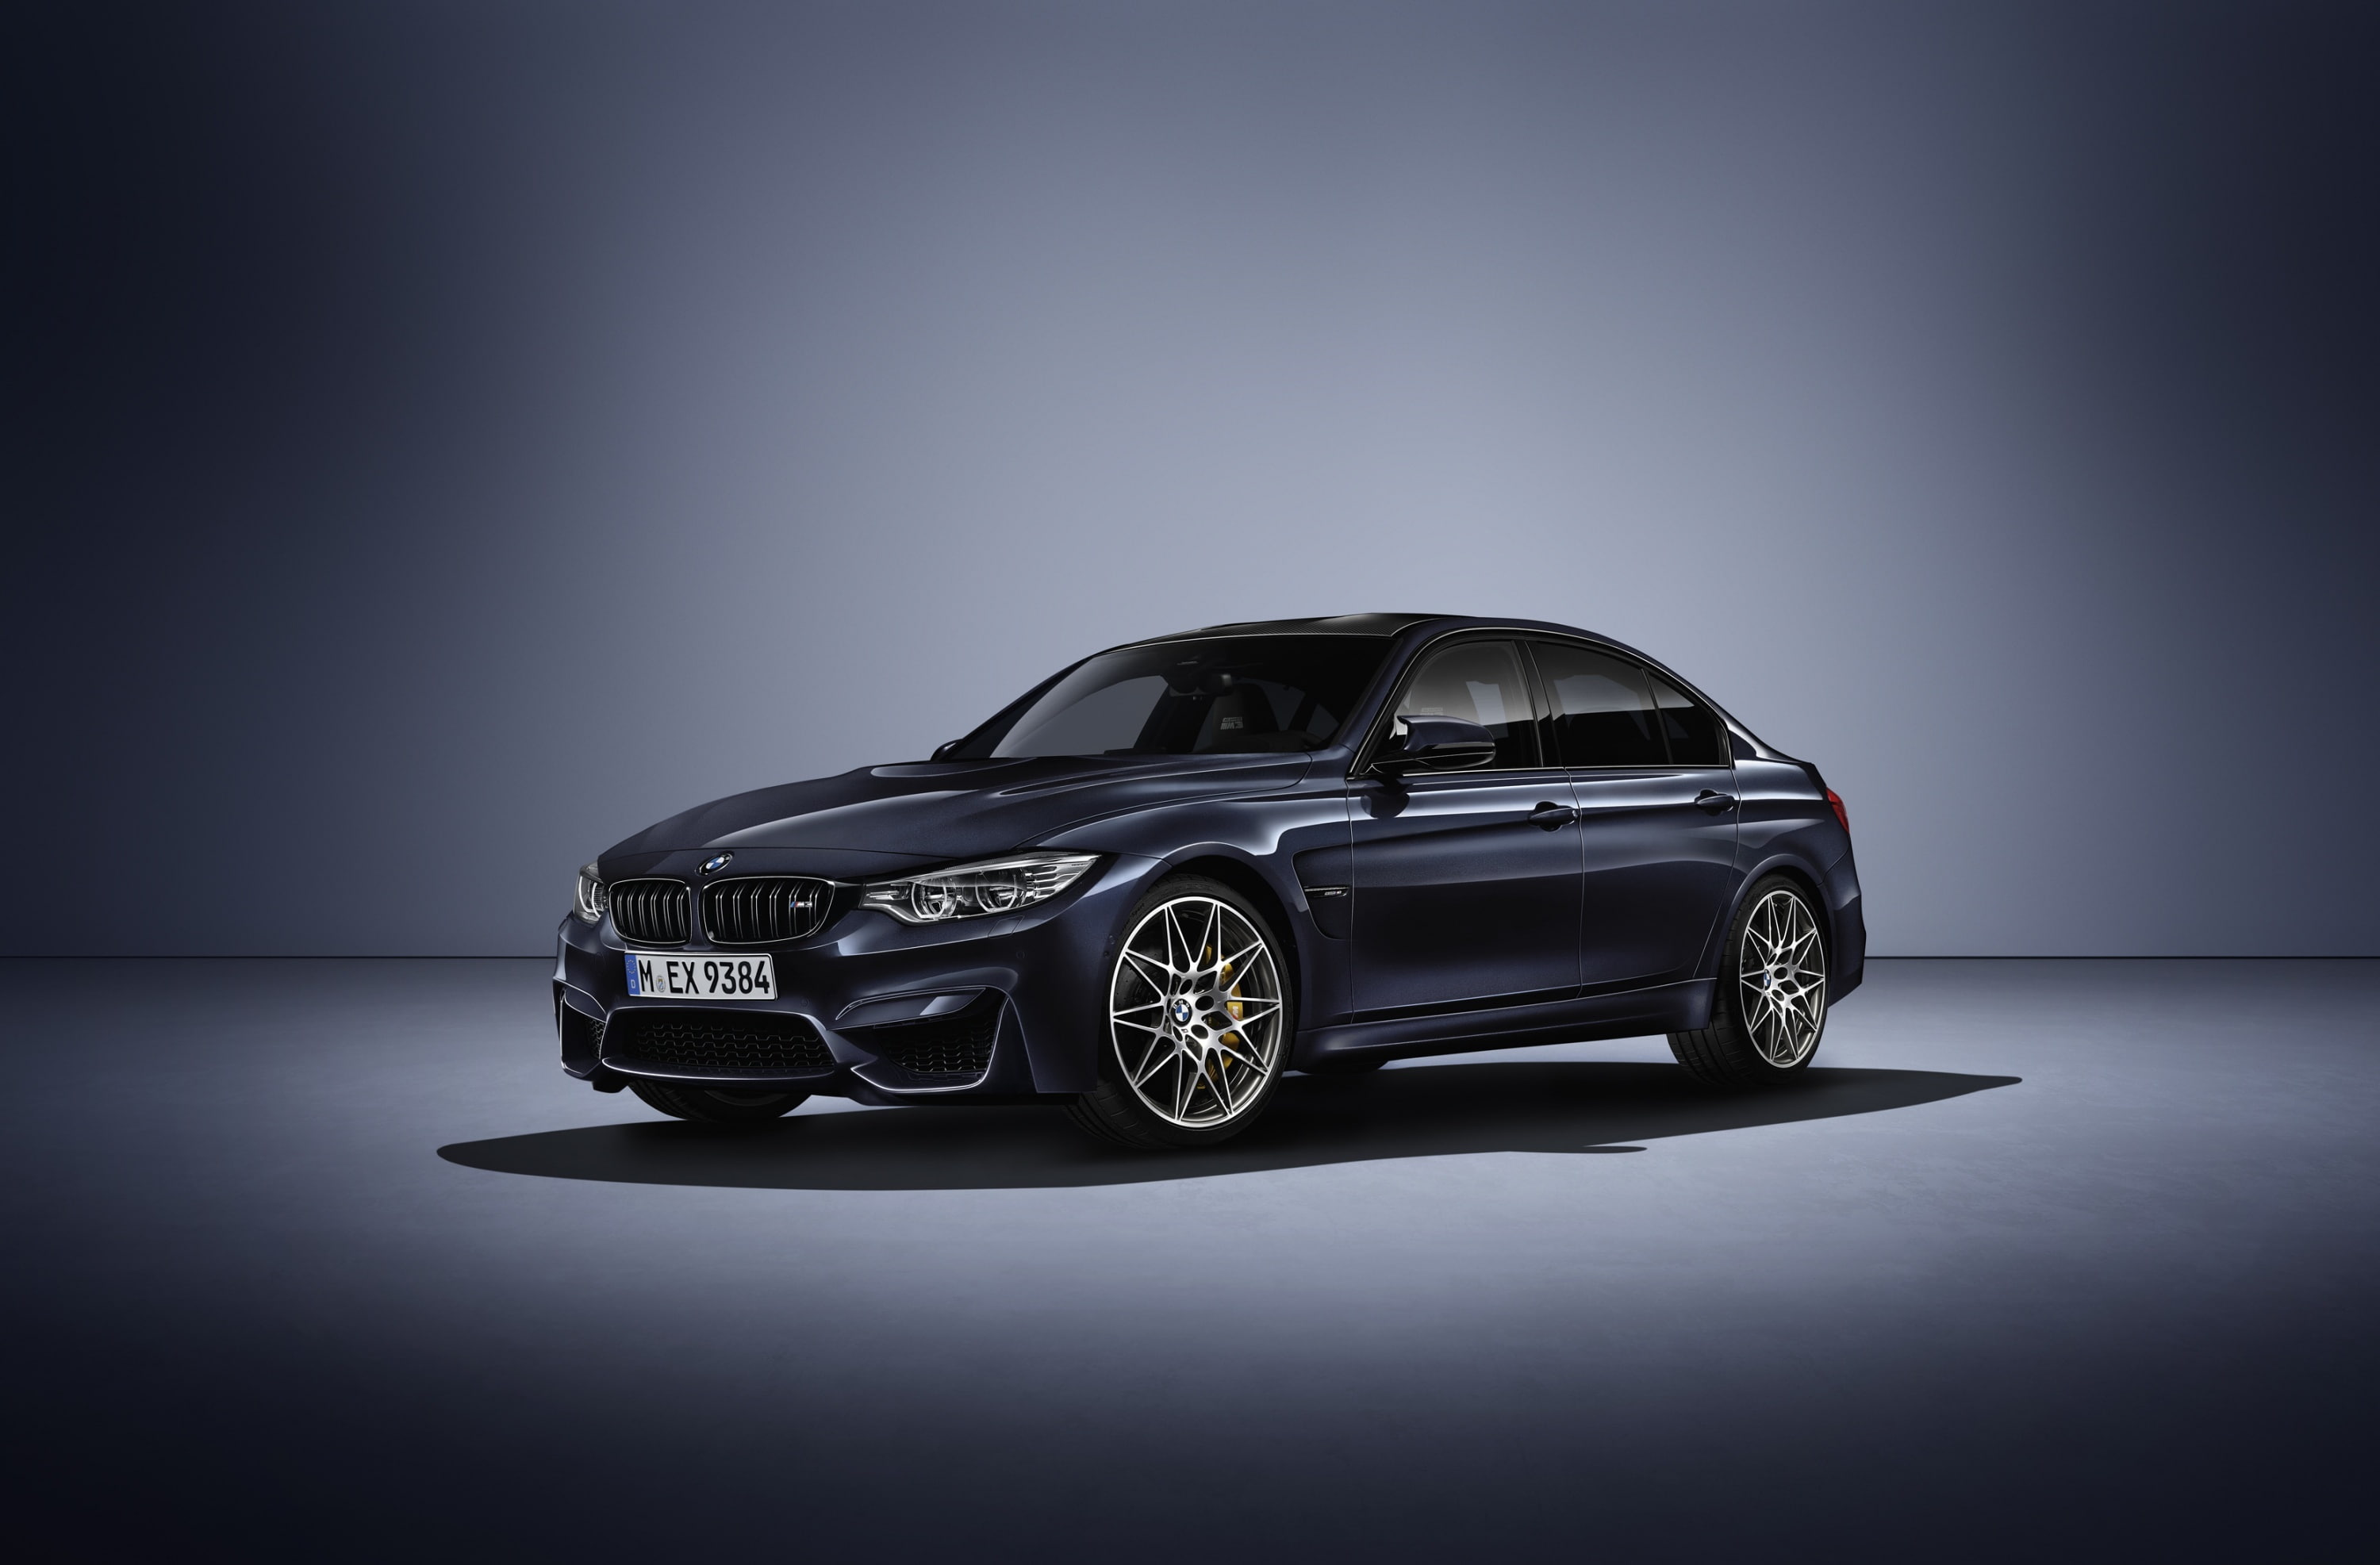 BMW F80 M3 Sedan, black sedan, Cars, Modern, German, Auto, Luxury